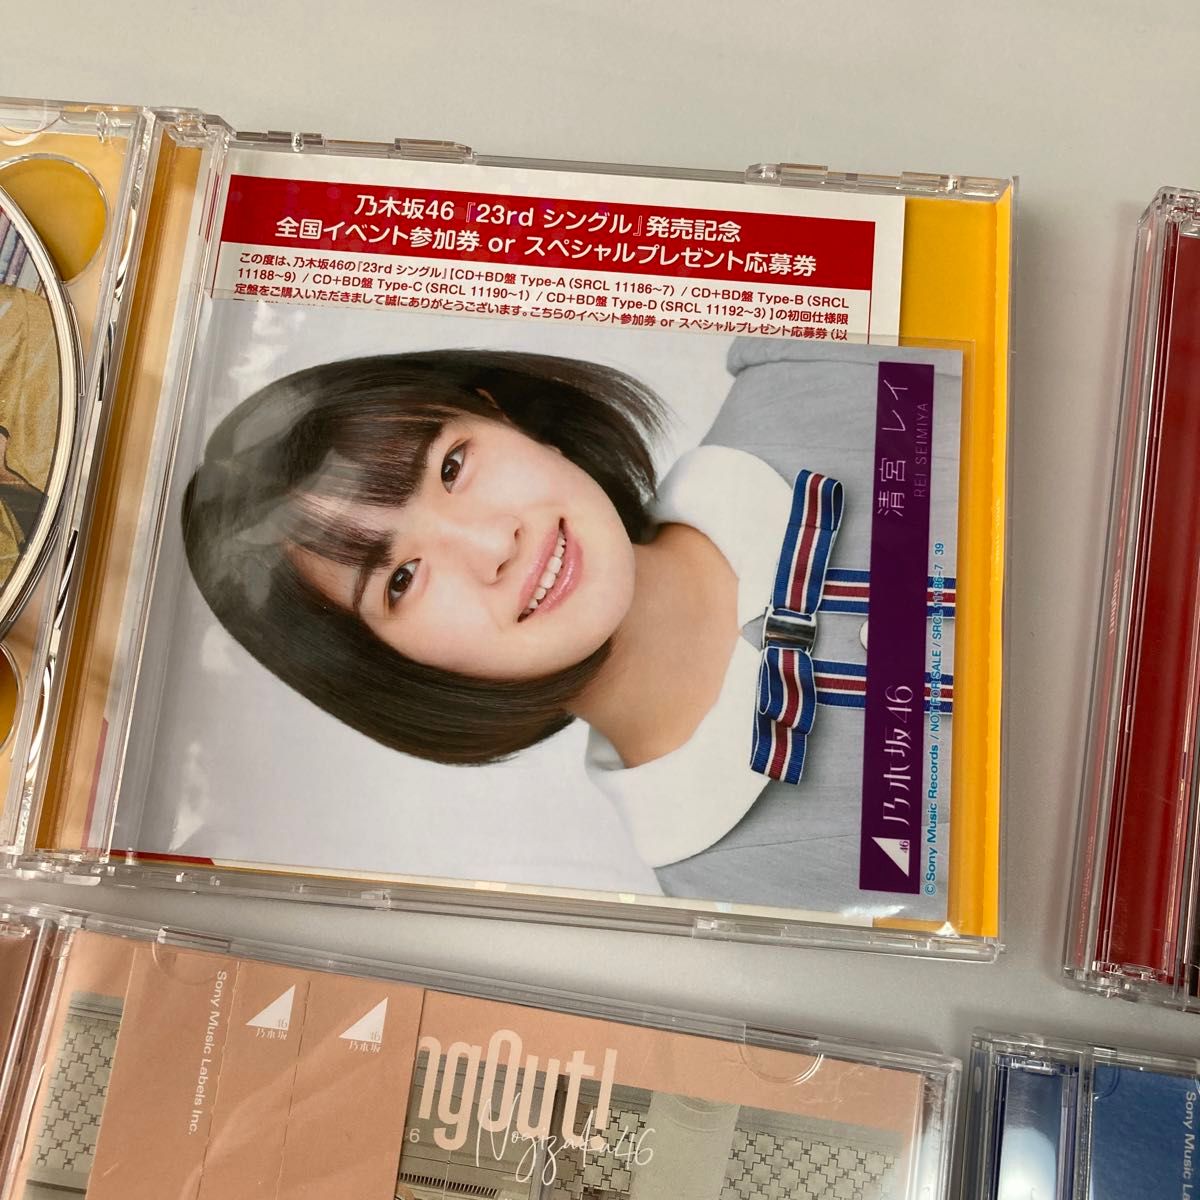 乃木坂46 SingOut! Type ABCD セット CD+Blu-ray  齋藤飛鳥 白石麻衣 生田絵梨花 梅澤美波 